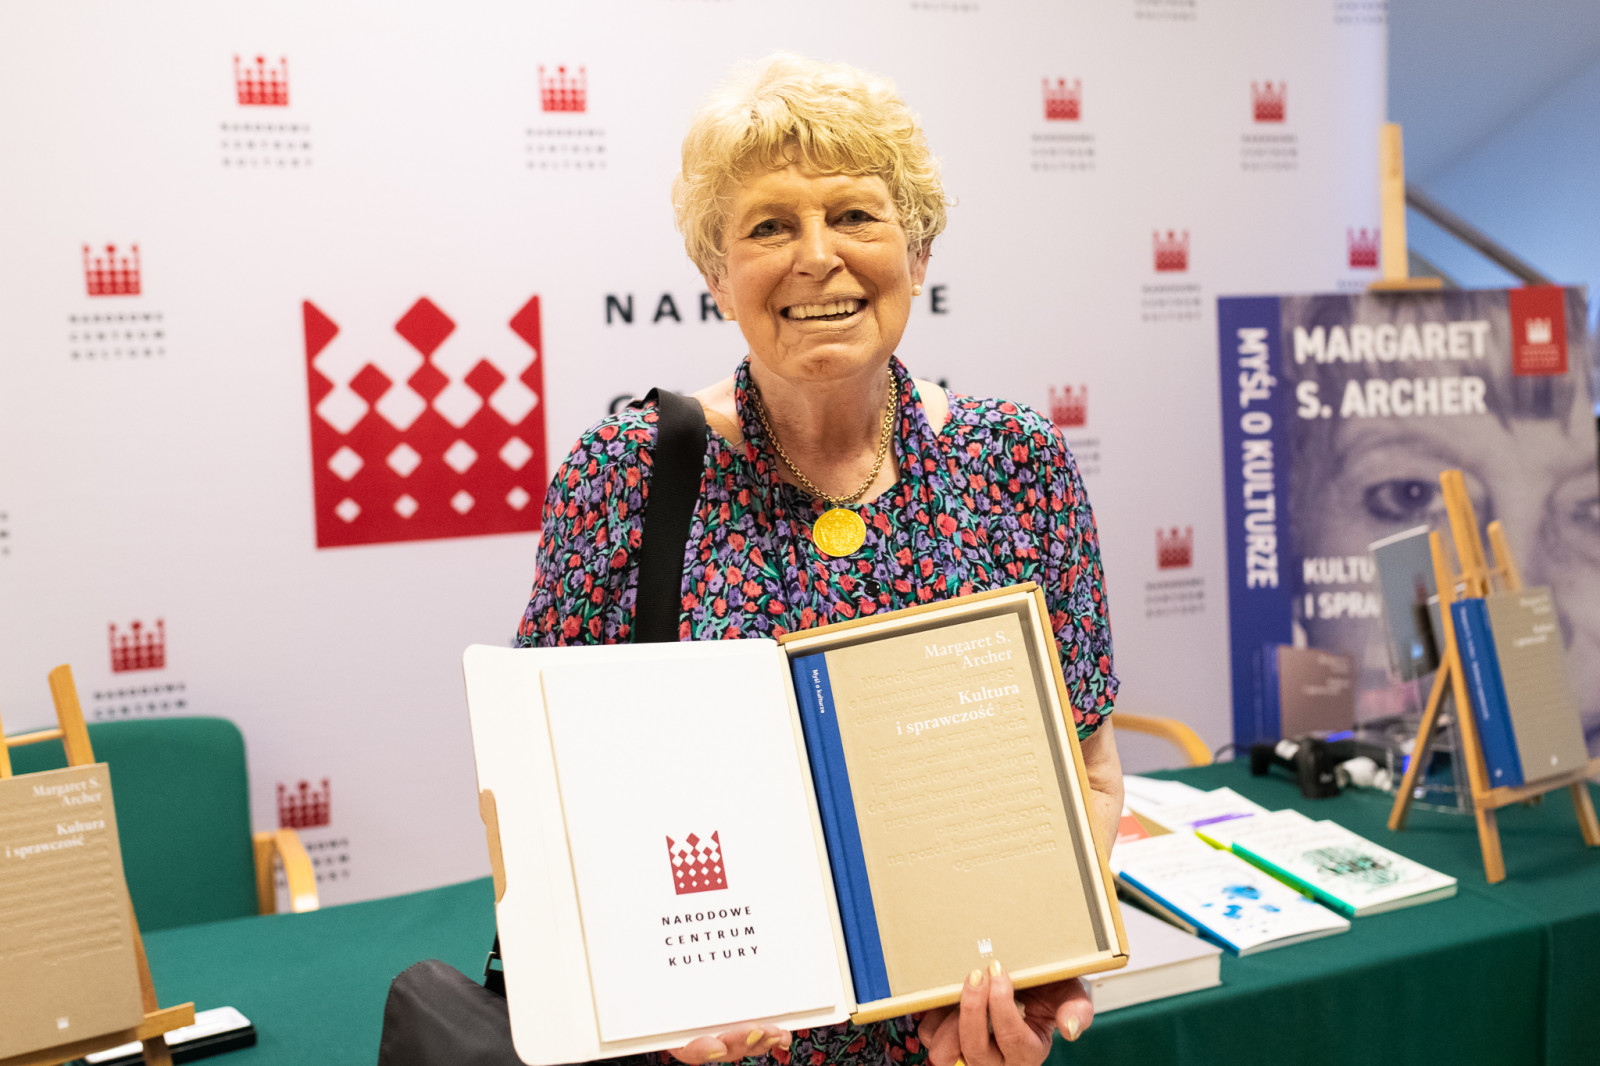 Prof. Margaret S. Archer otrzymała polskie wydanie swojej książki [FOTORELACJA]